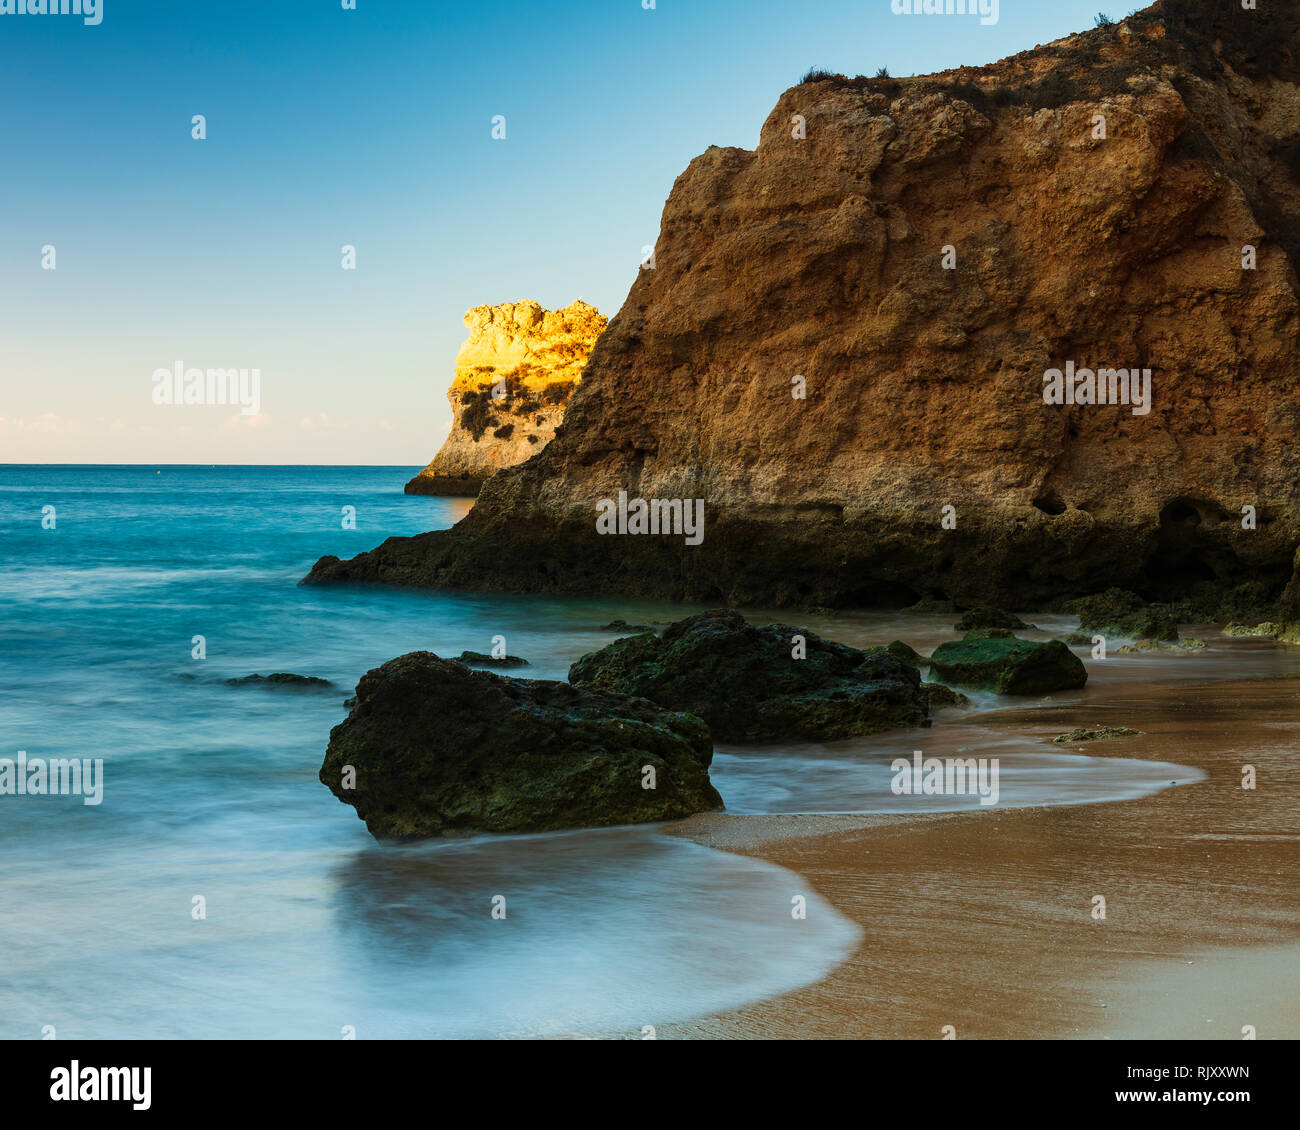 La luce del sole illuminando la formazione di roccia in mare, Alvor, Algarve, Portogallo, Europa Foto Stock